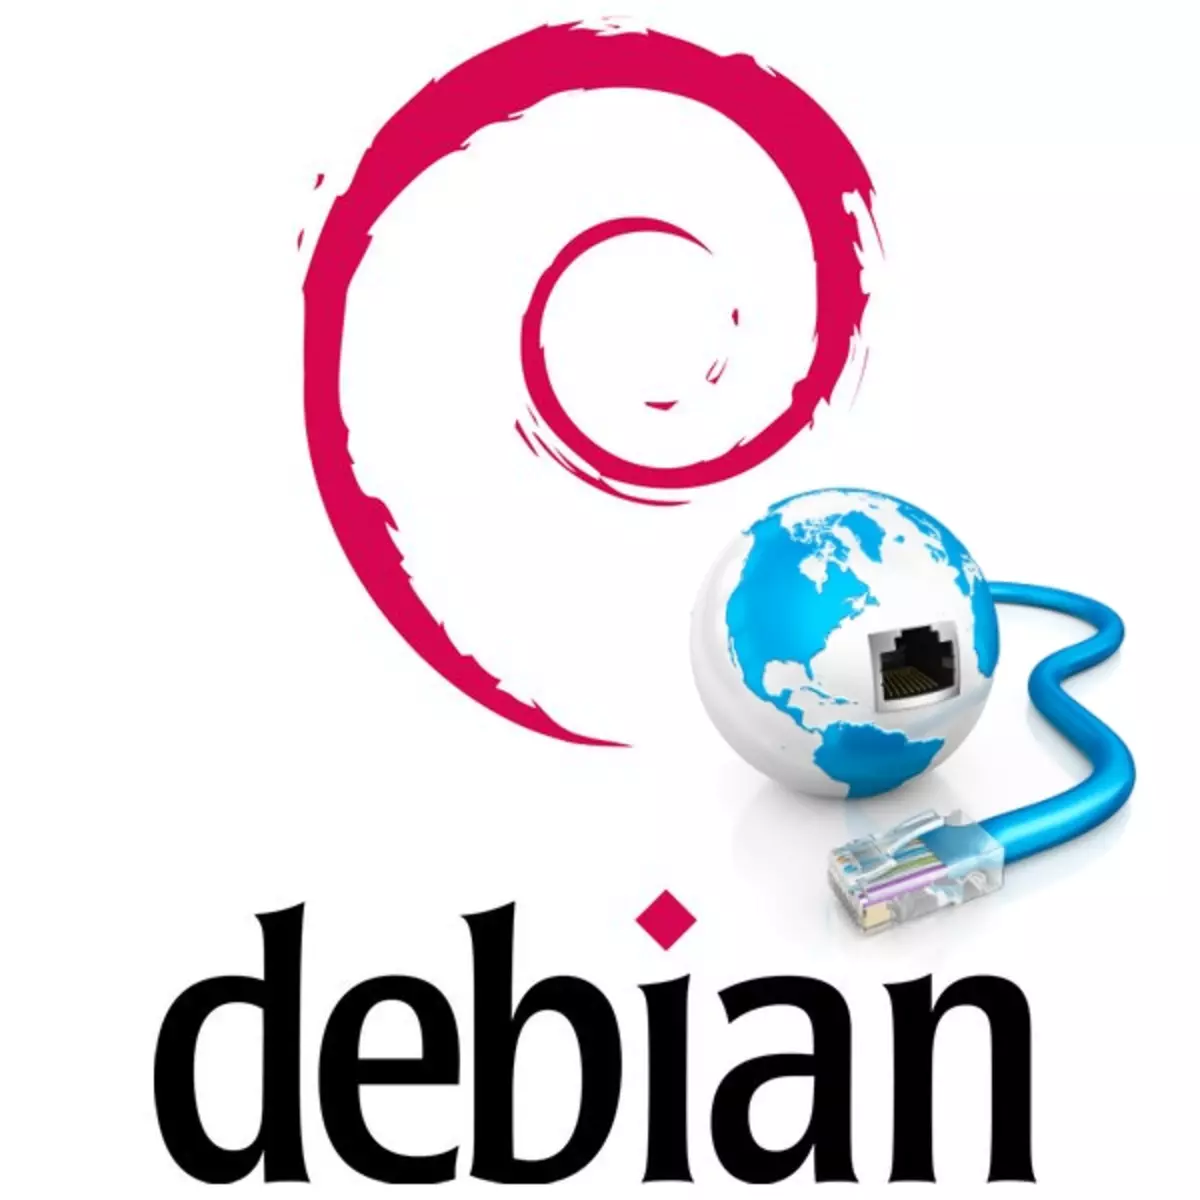 Debian లో ఒక నెట్వర్క్ ఏర్పాటు